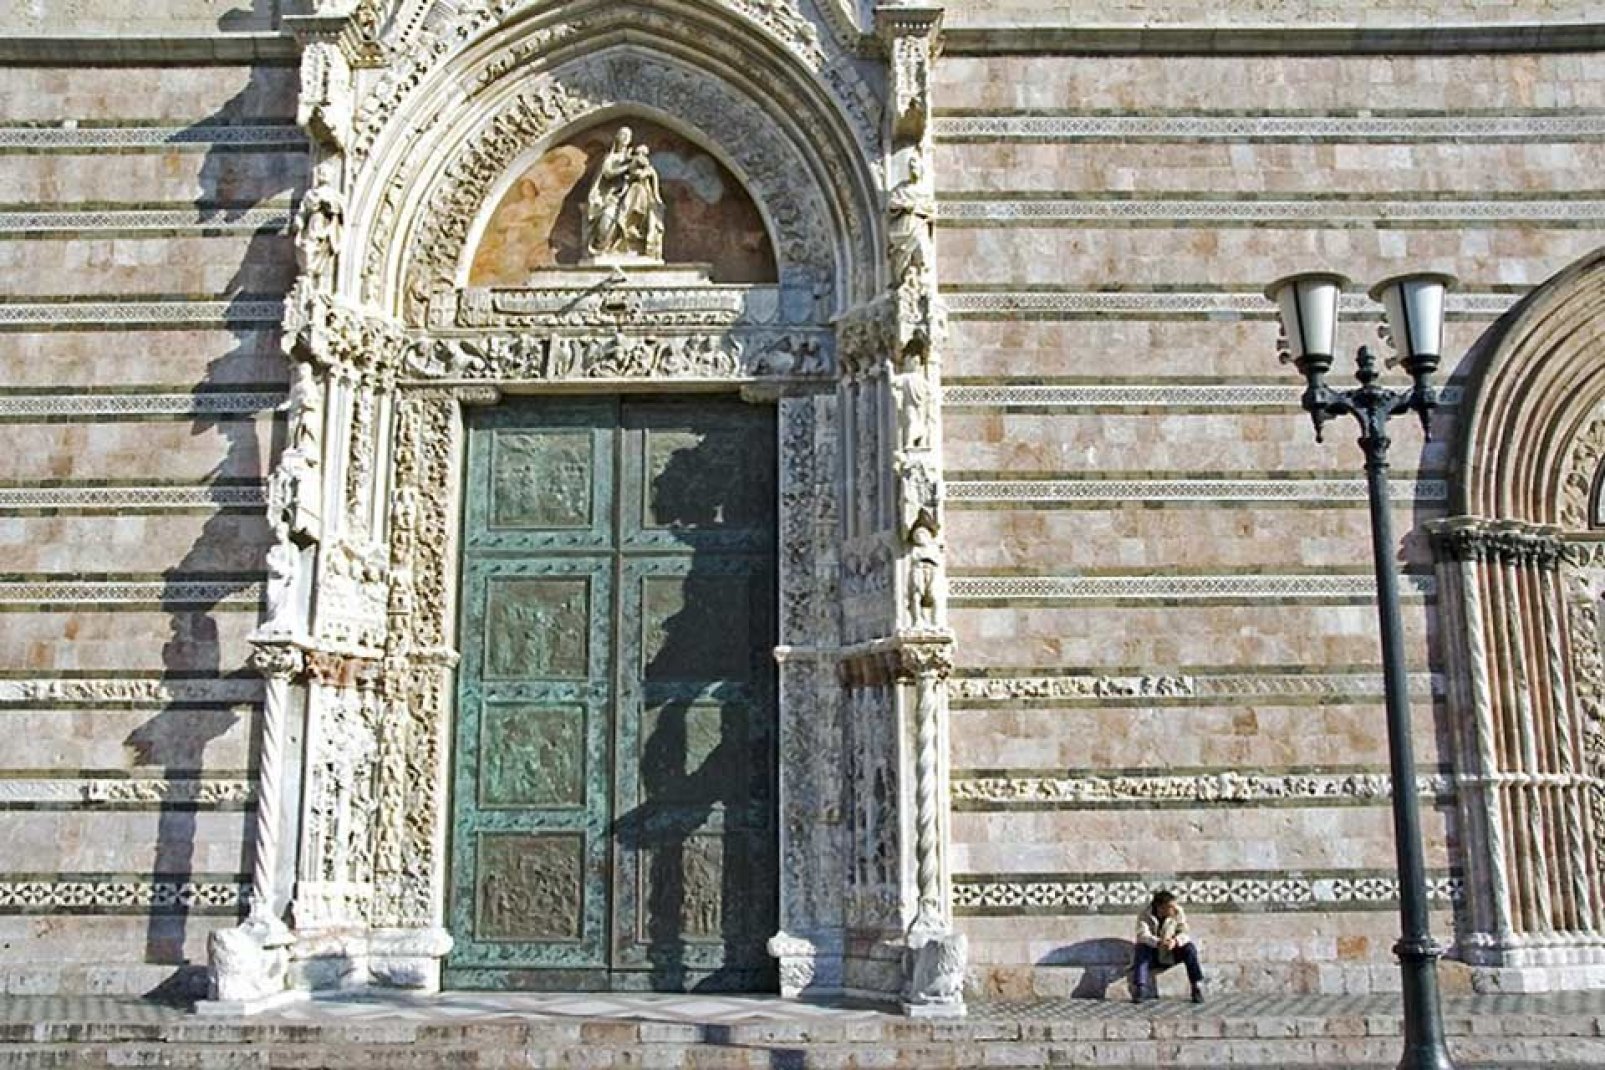 La fachada conserva elementos de gran valor, como el magnífico portal gótico, los bajorrelieves y las ventanas del siglo XV.